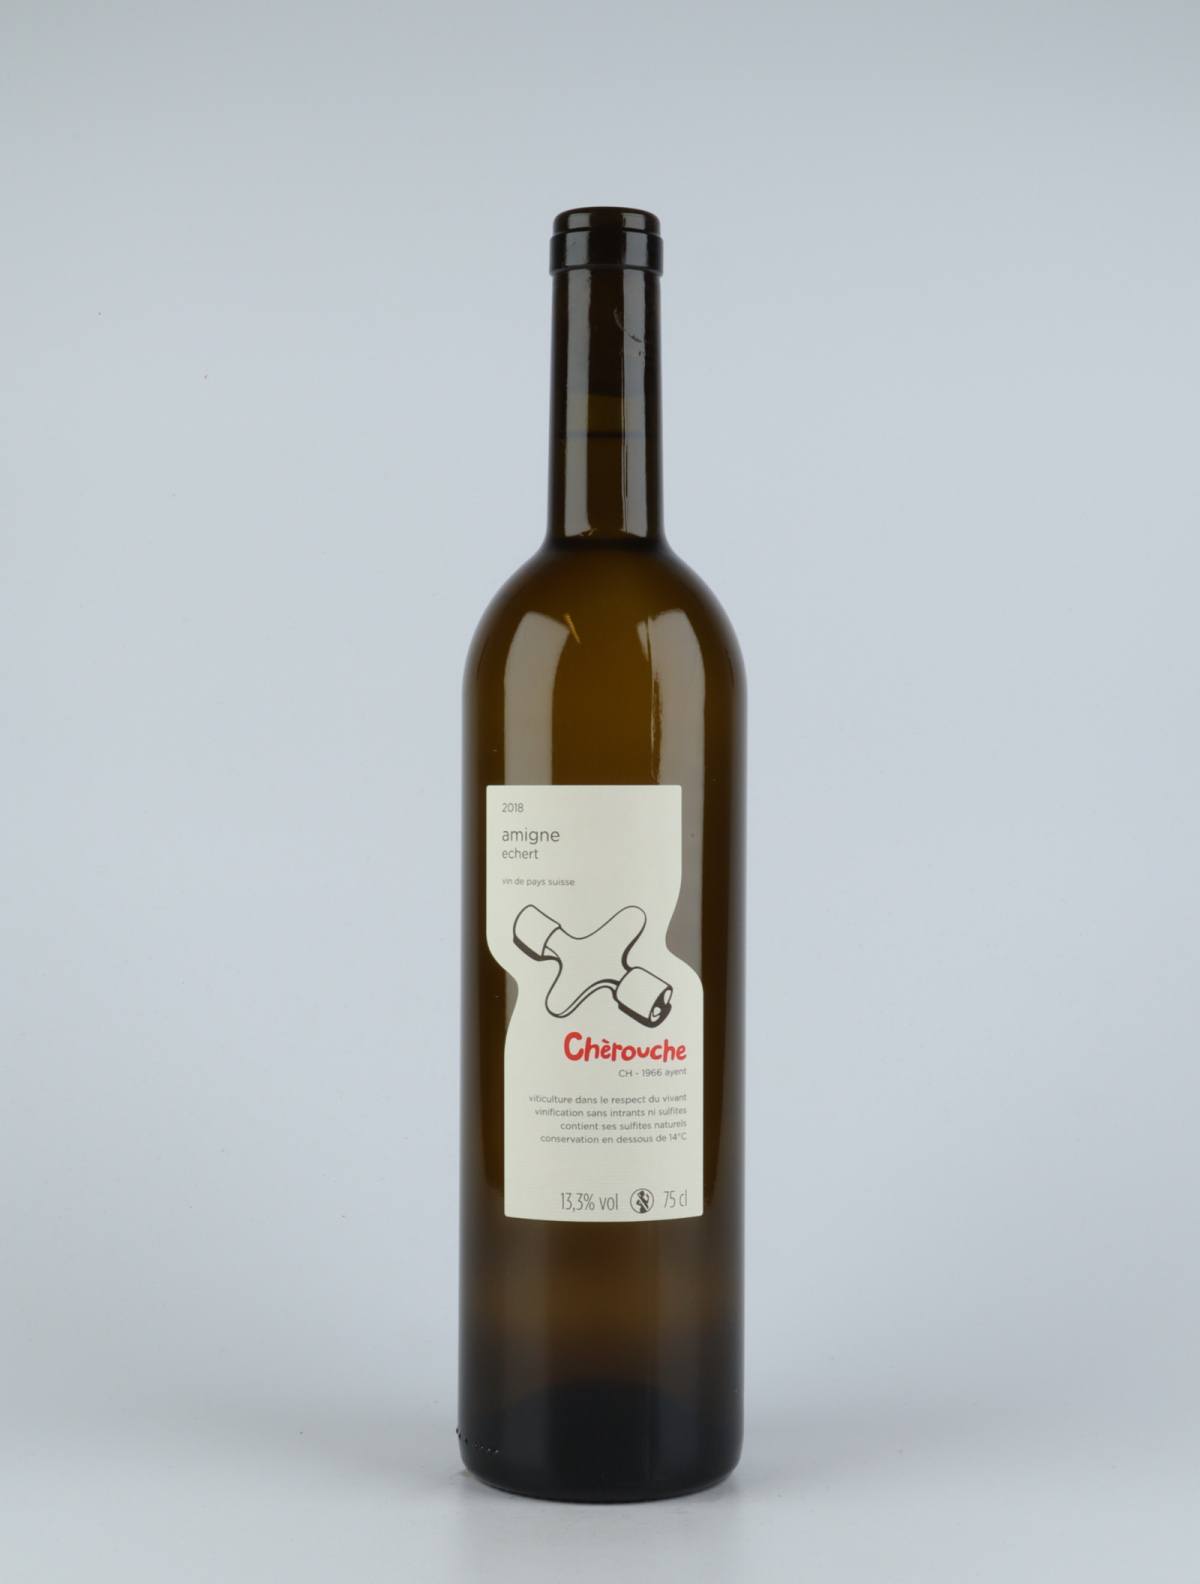 A bottle 2018 Amigne White wine from Chèrouche, Valais in Switzerland